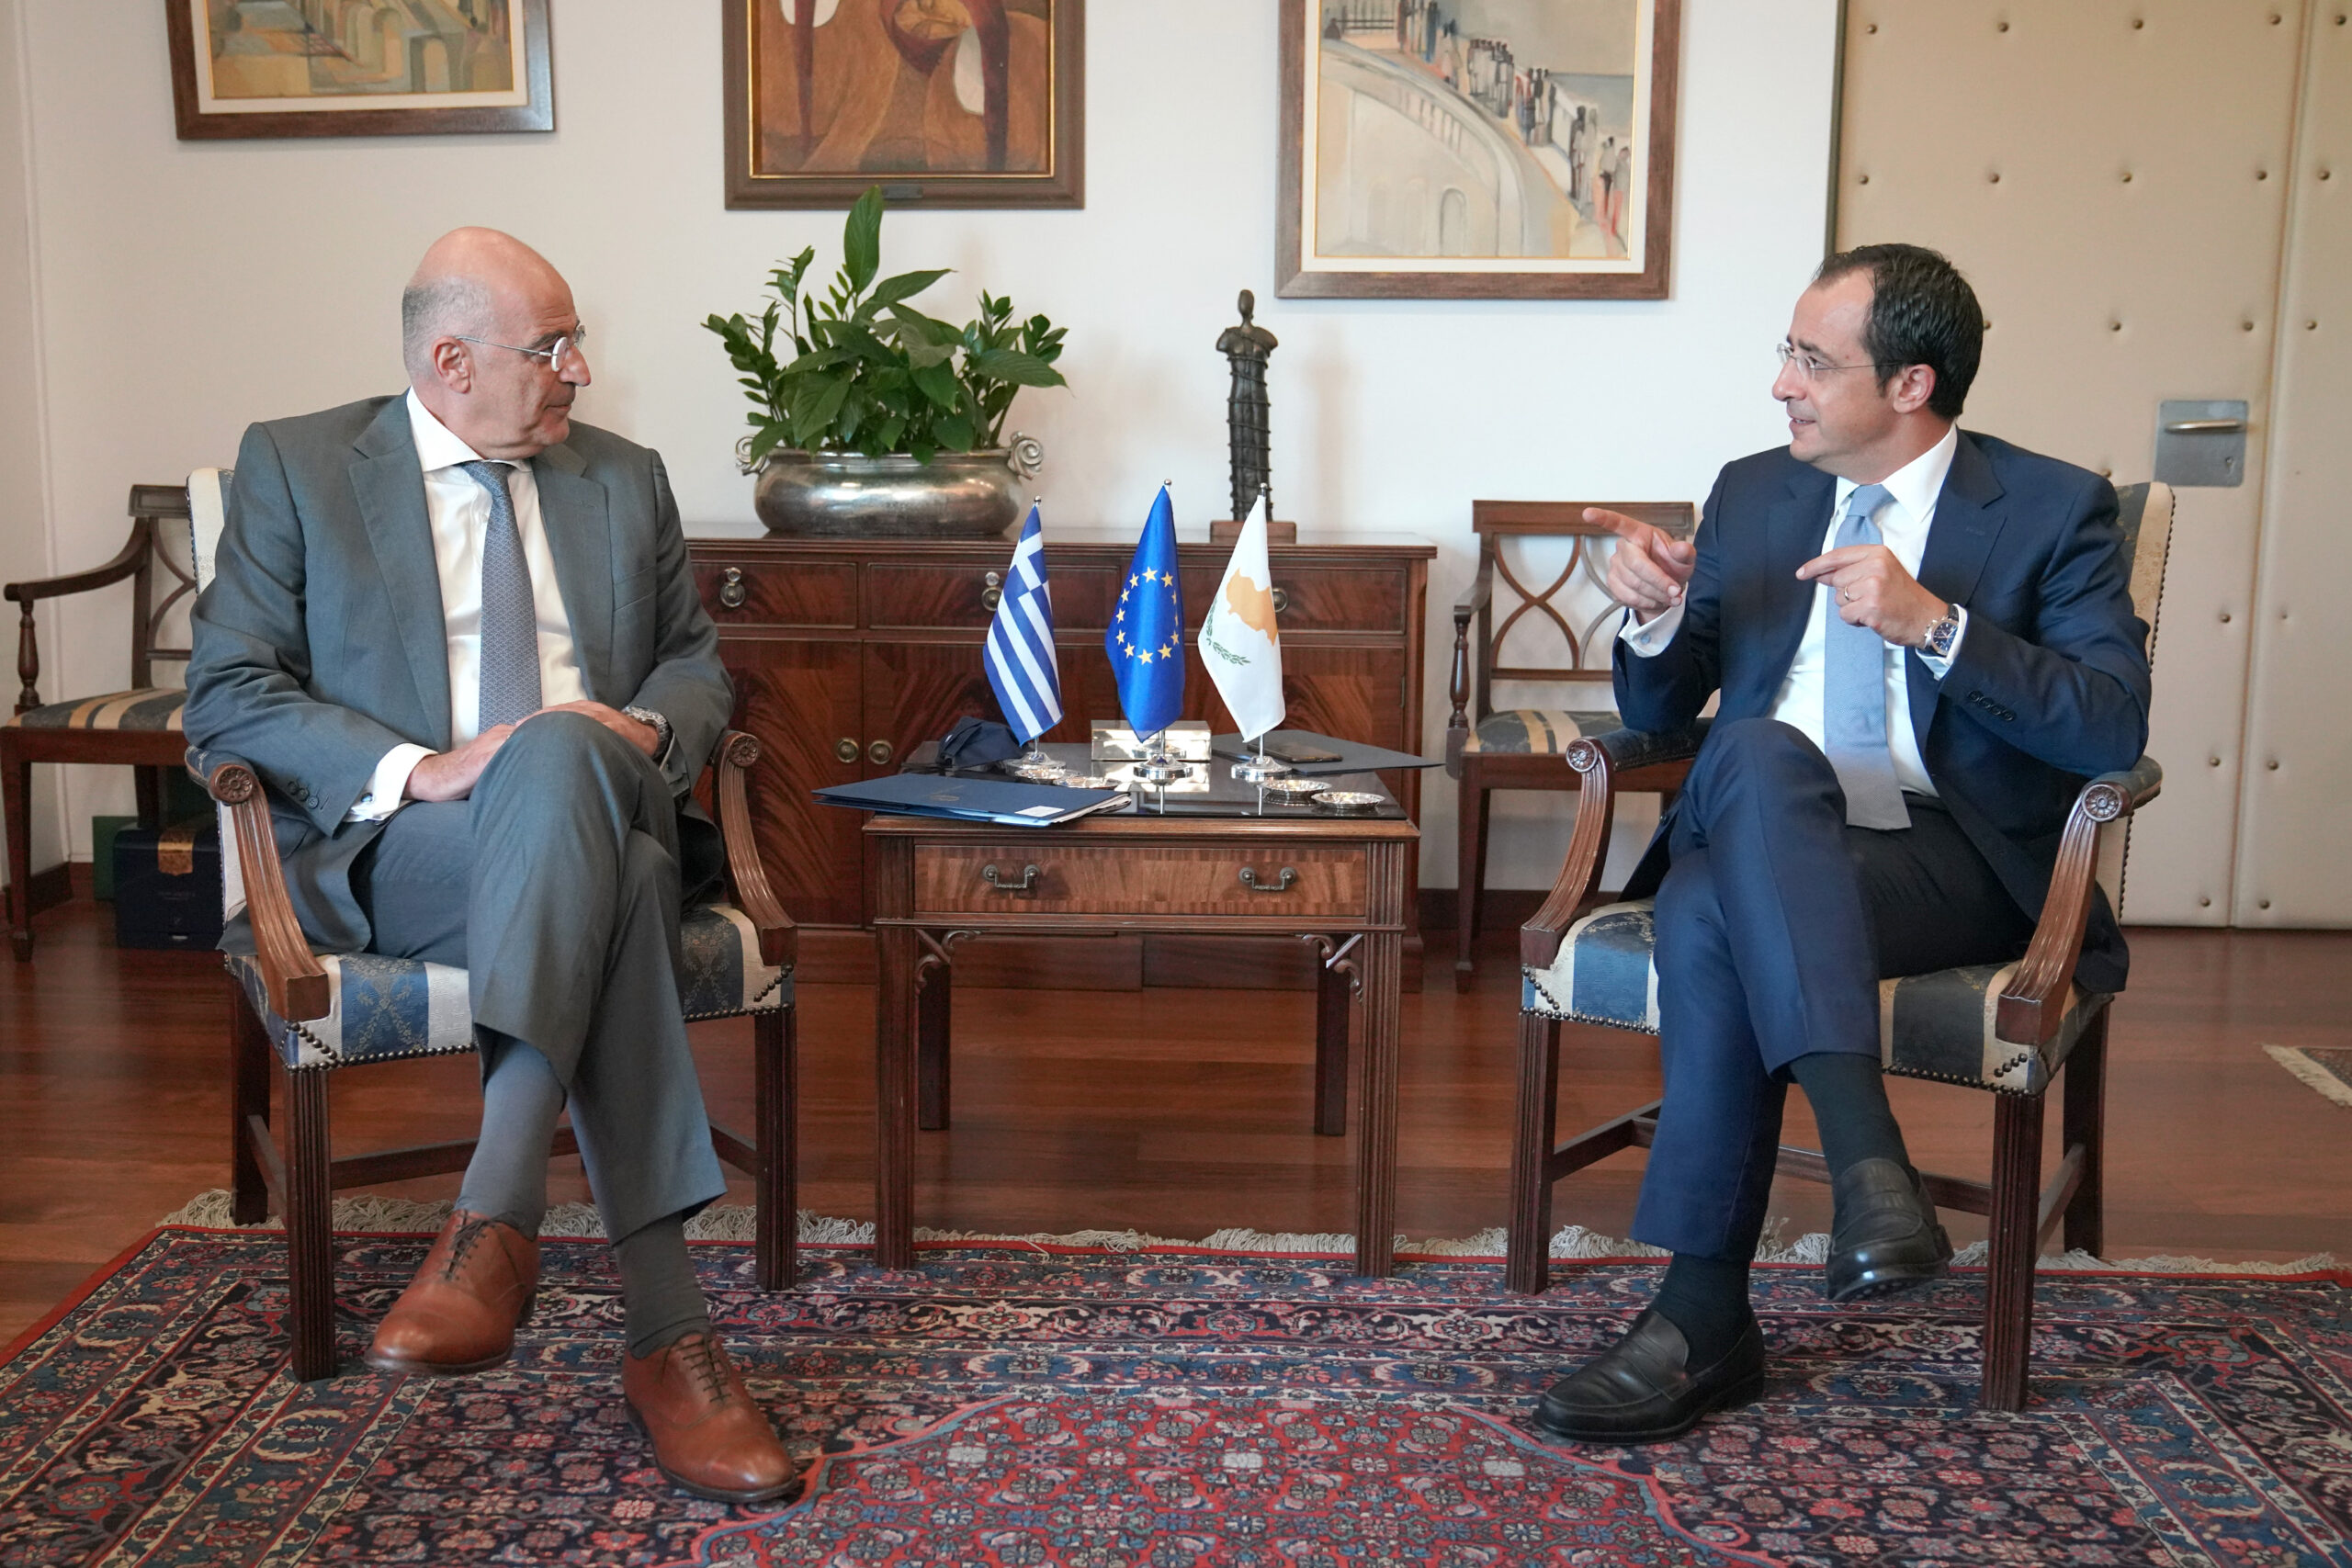 Επίσκεψη του Υπουργού Εξωτερικών, Νίκου Δένδια, στην Κυπριακή Δημοκρατία. Συνάντηση με τον Υπουργό Εξωτερικών της Κύπρου, Νίκο Χριστοδουλίδη. (Κύπρος 18.08.2020)